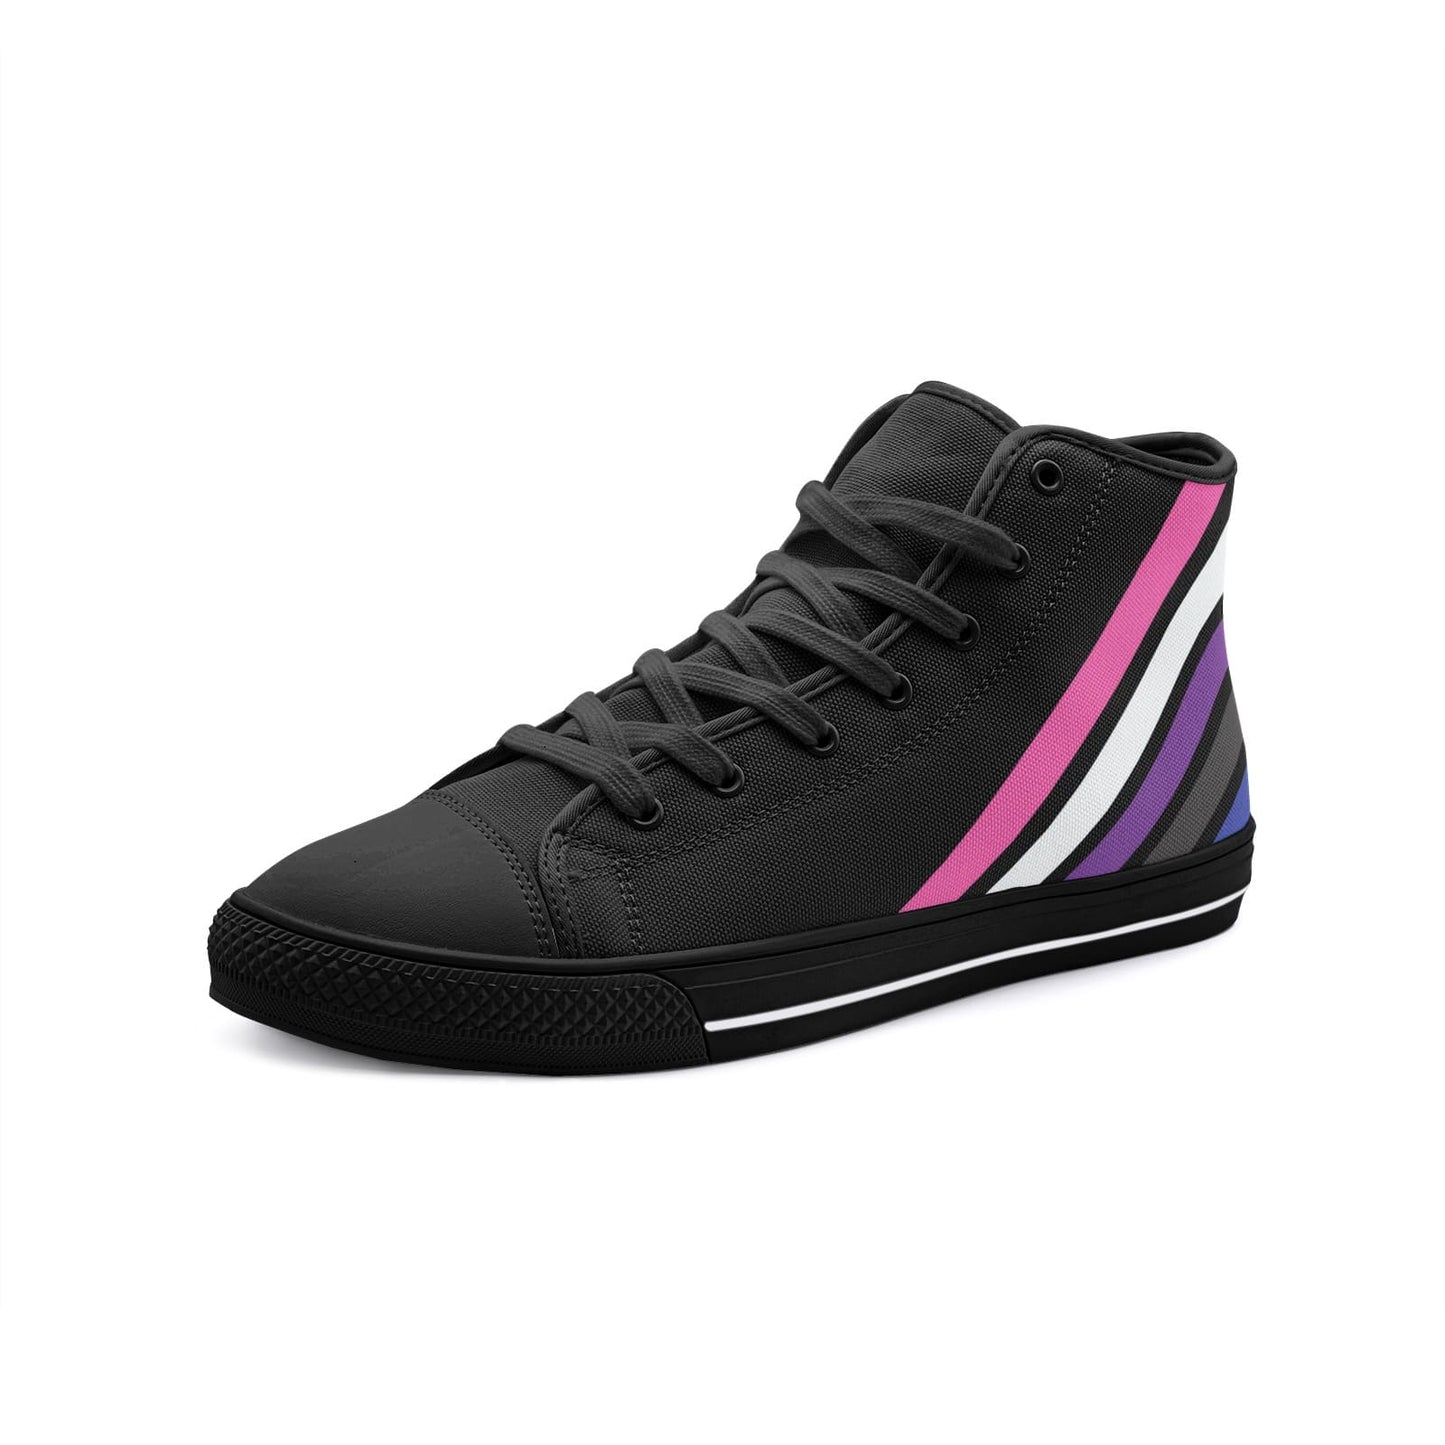 genderfluid shoes, subtle gender fluid sneakers, black